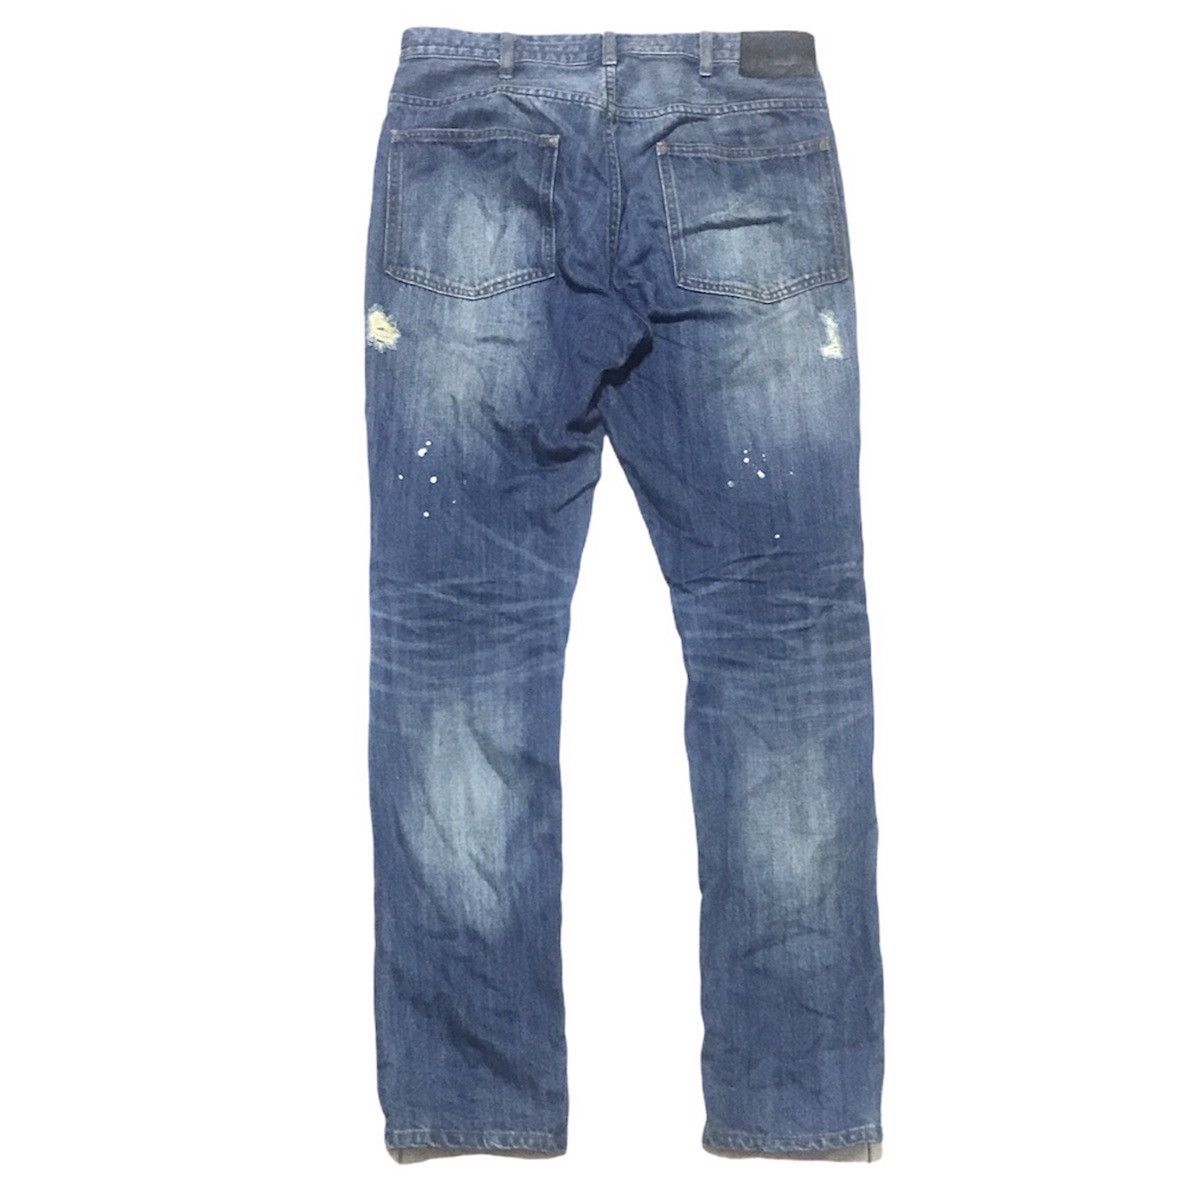 N(N) Number Nine Denim Distressed jeans - 9